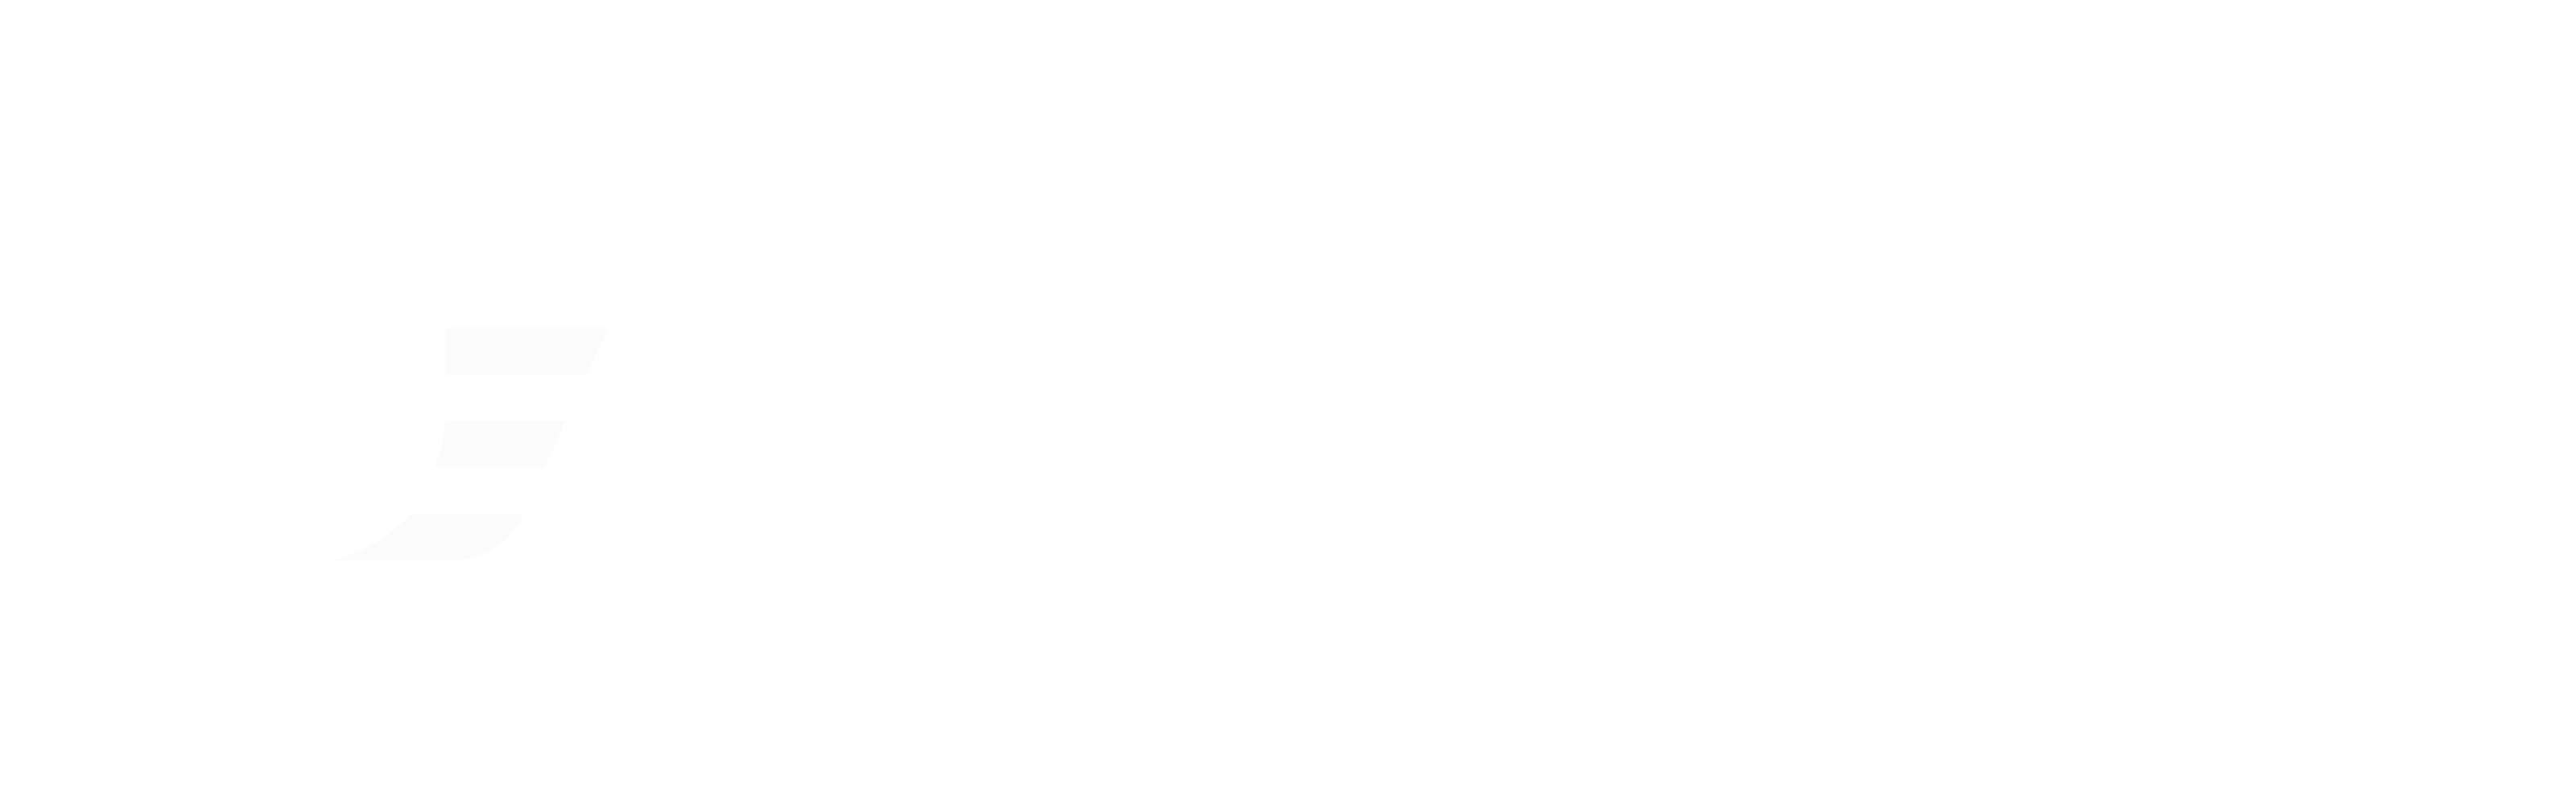 Logo for getelevar.com